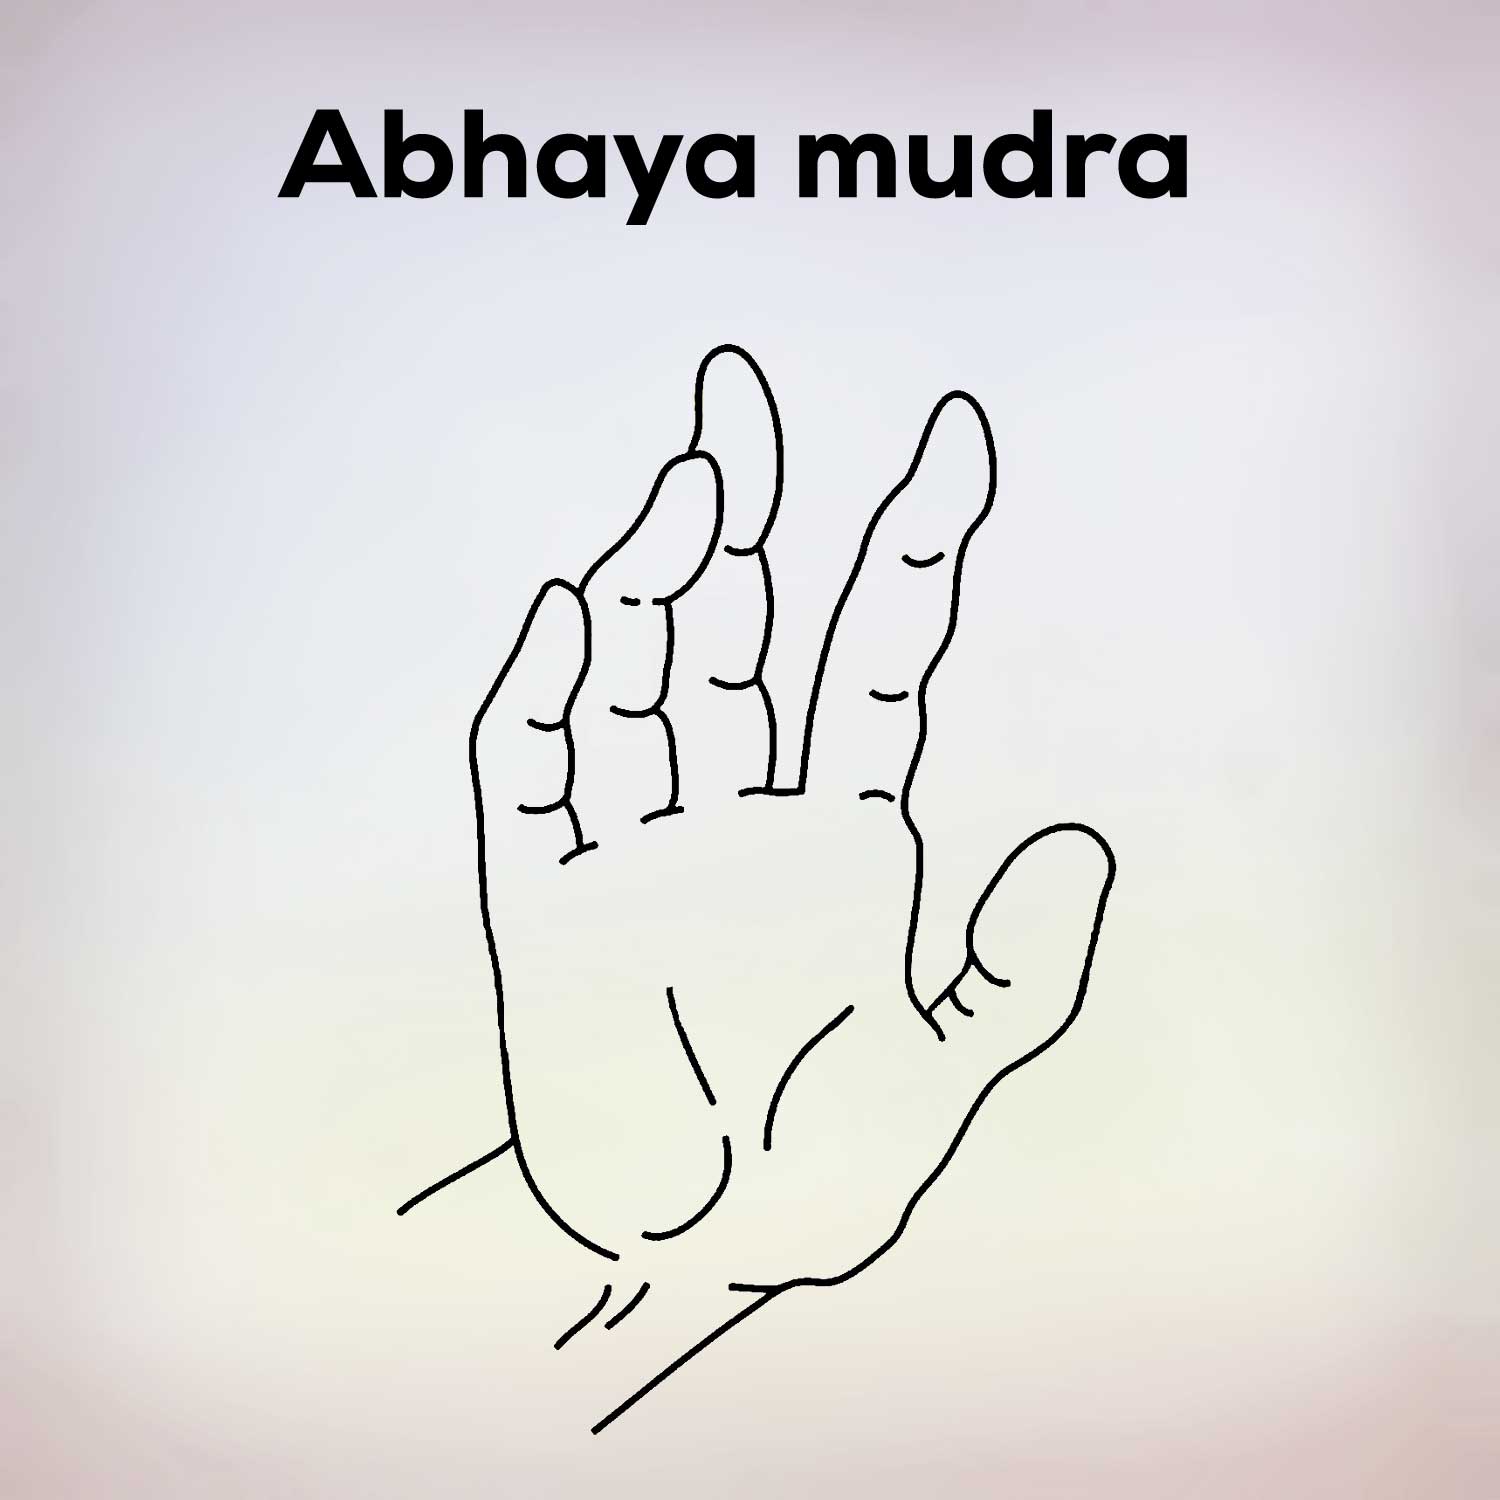 Мудра от страха и тревоги: абхая и другие упражнения для пальцев рук, жесты защиты и преодоления депрессии